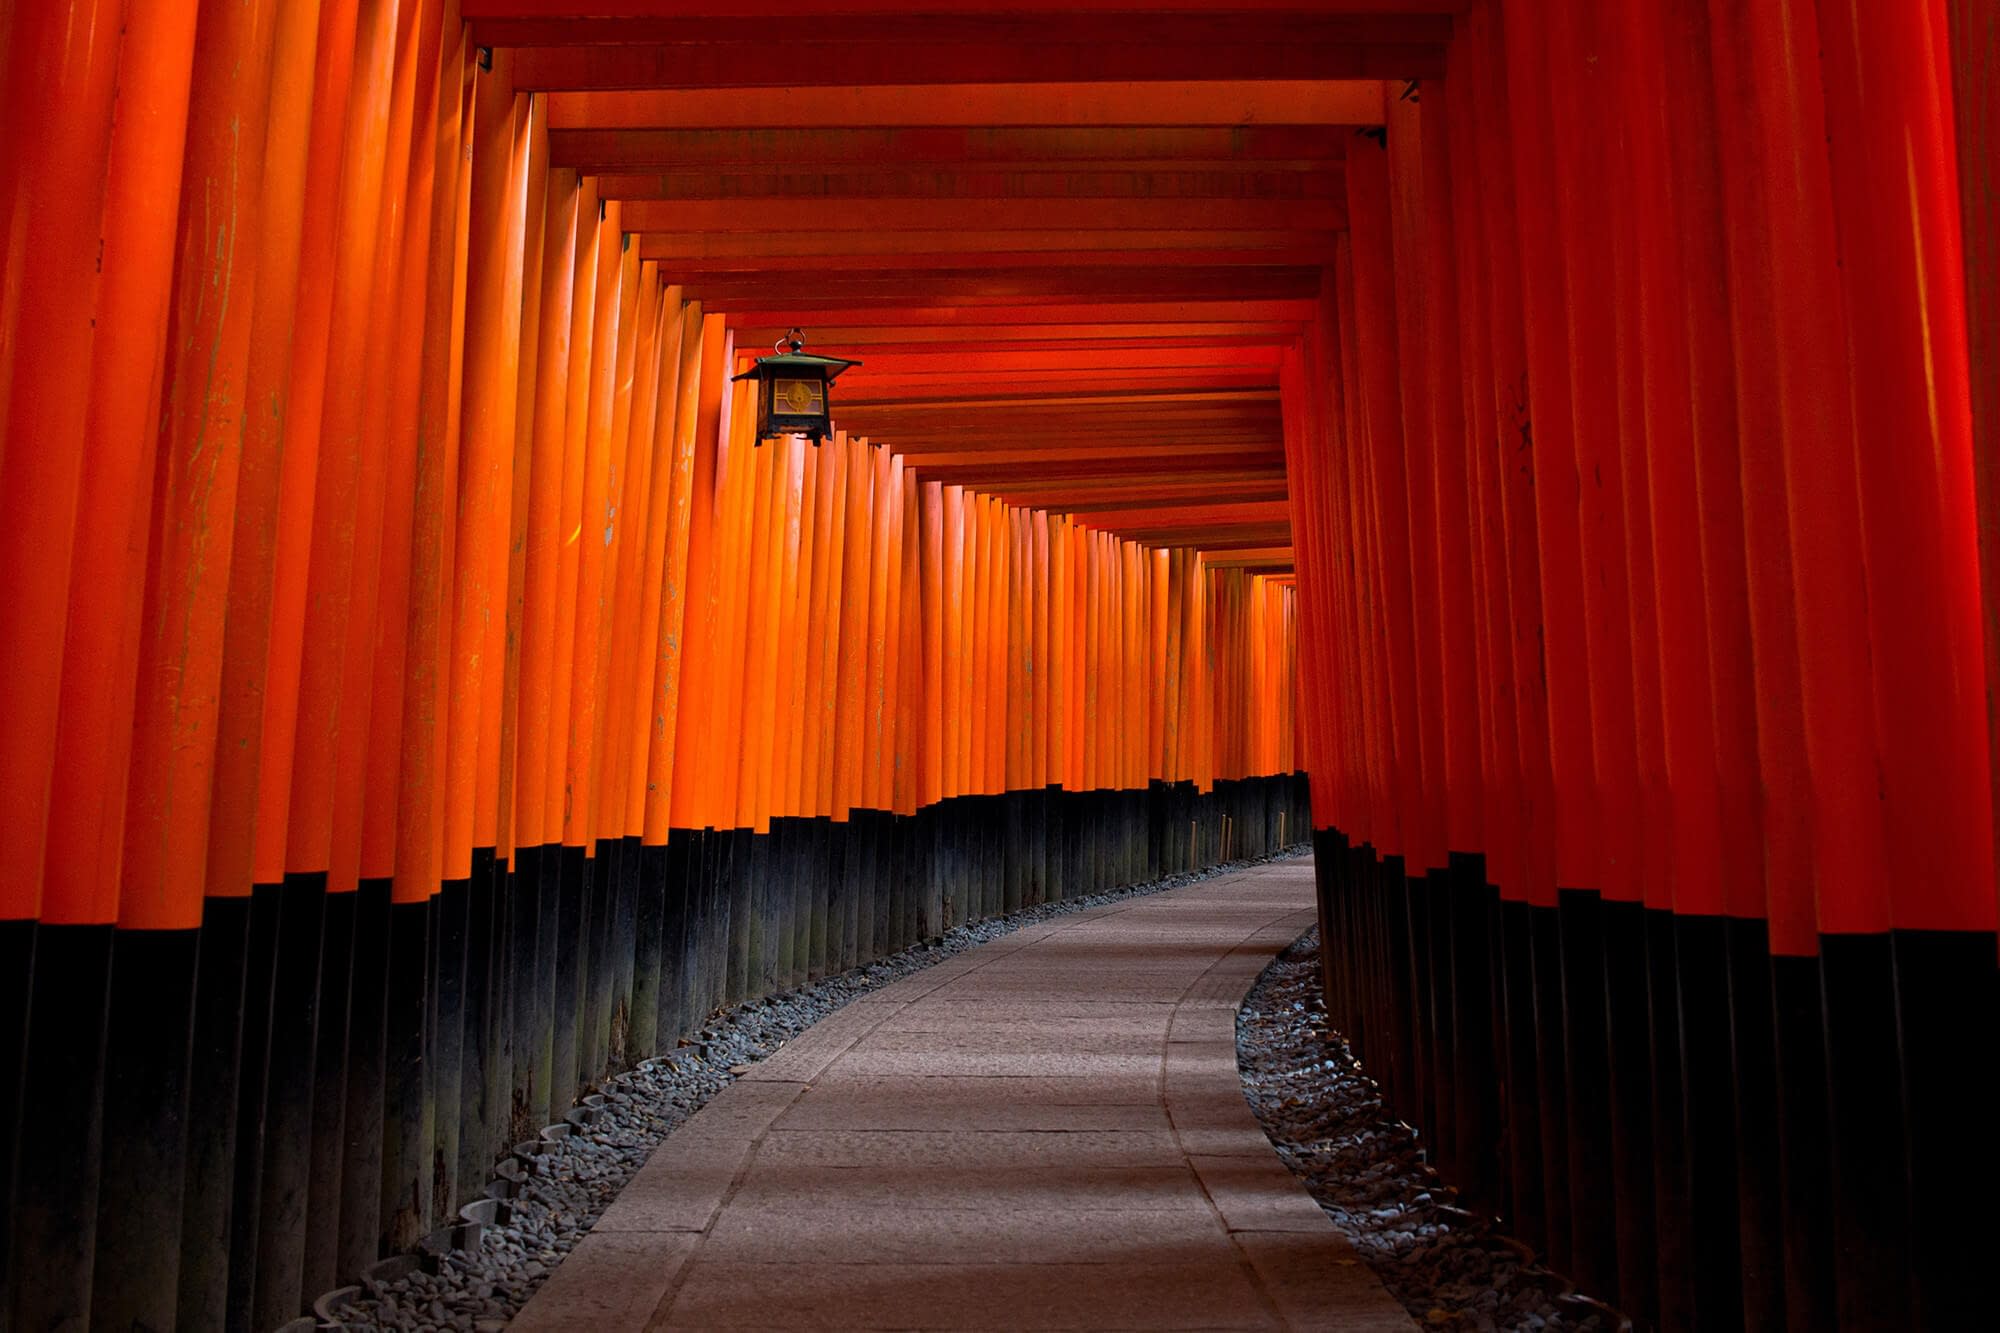 Torii alleyway in Kyoto, Japan